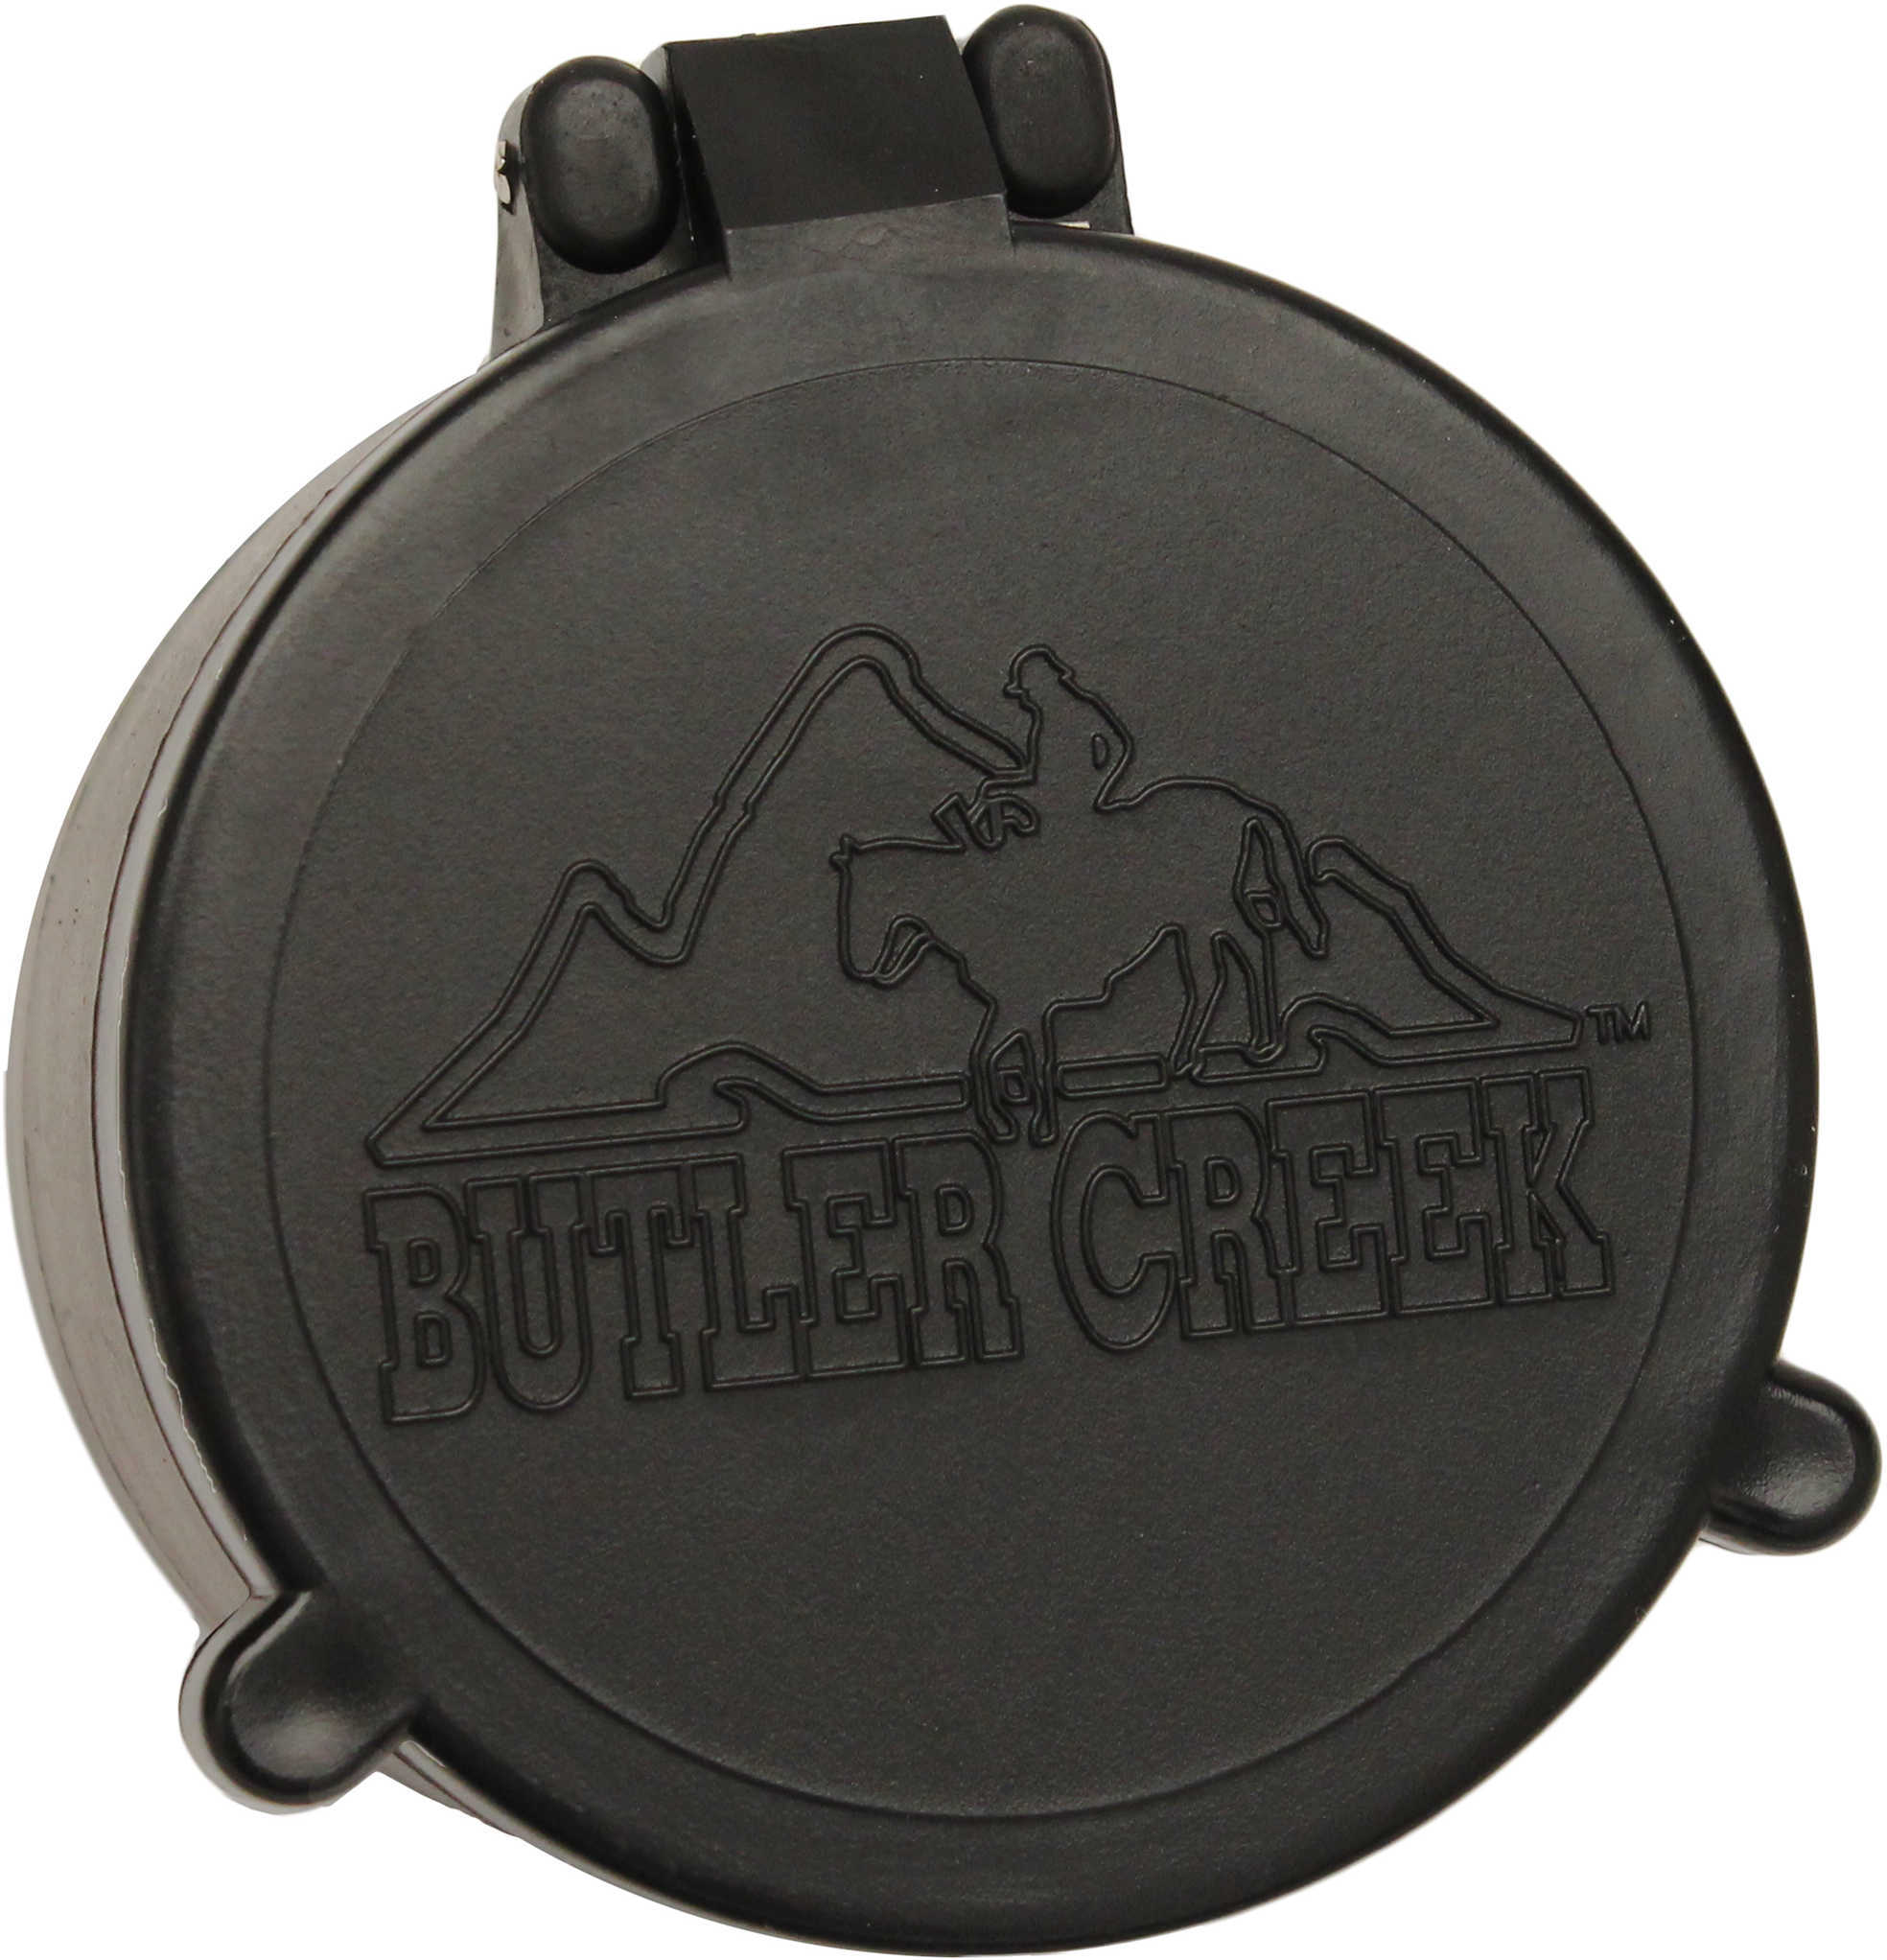 Butler Creek 30310 Flip-Open Scope Cover Objective Lens 50.70mm Slip On Polymer Black